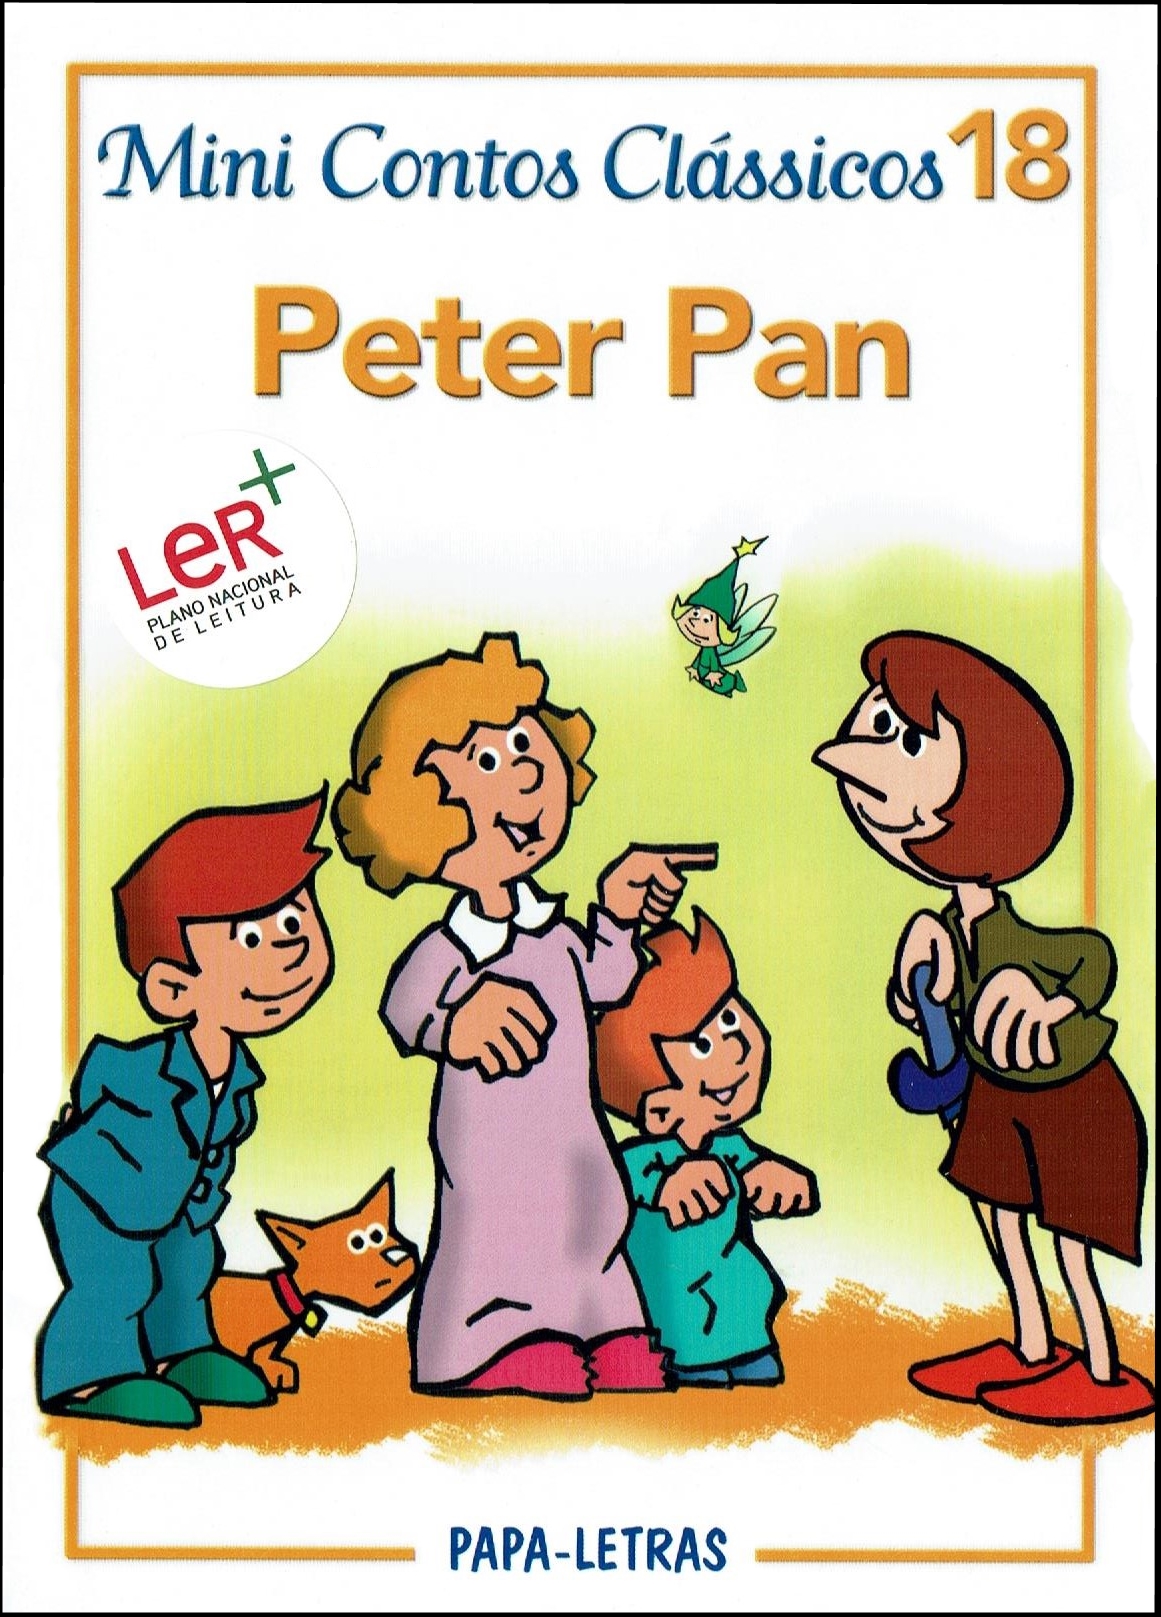 MCC 18 - Peter Pan